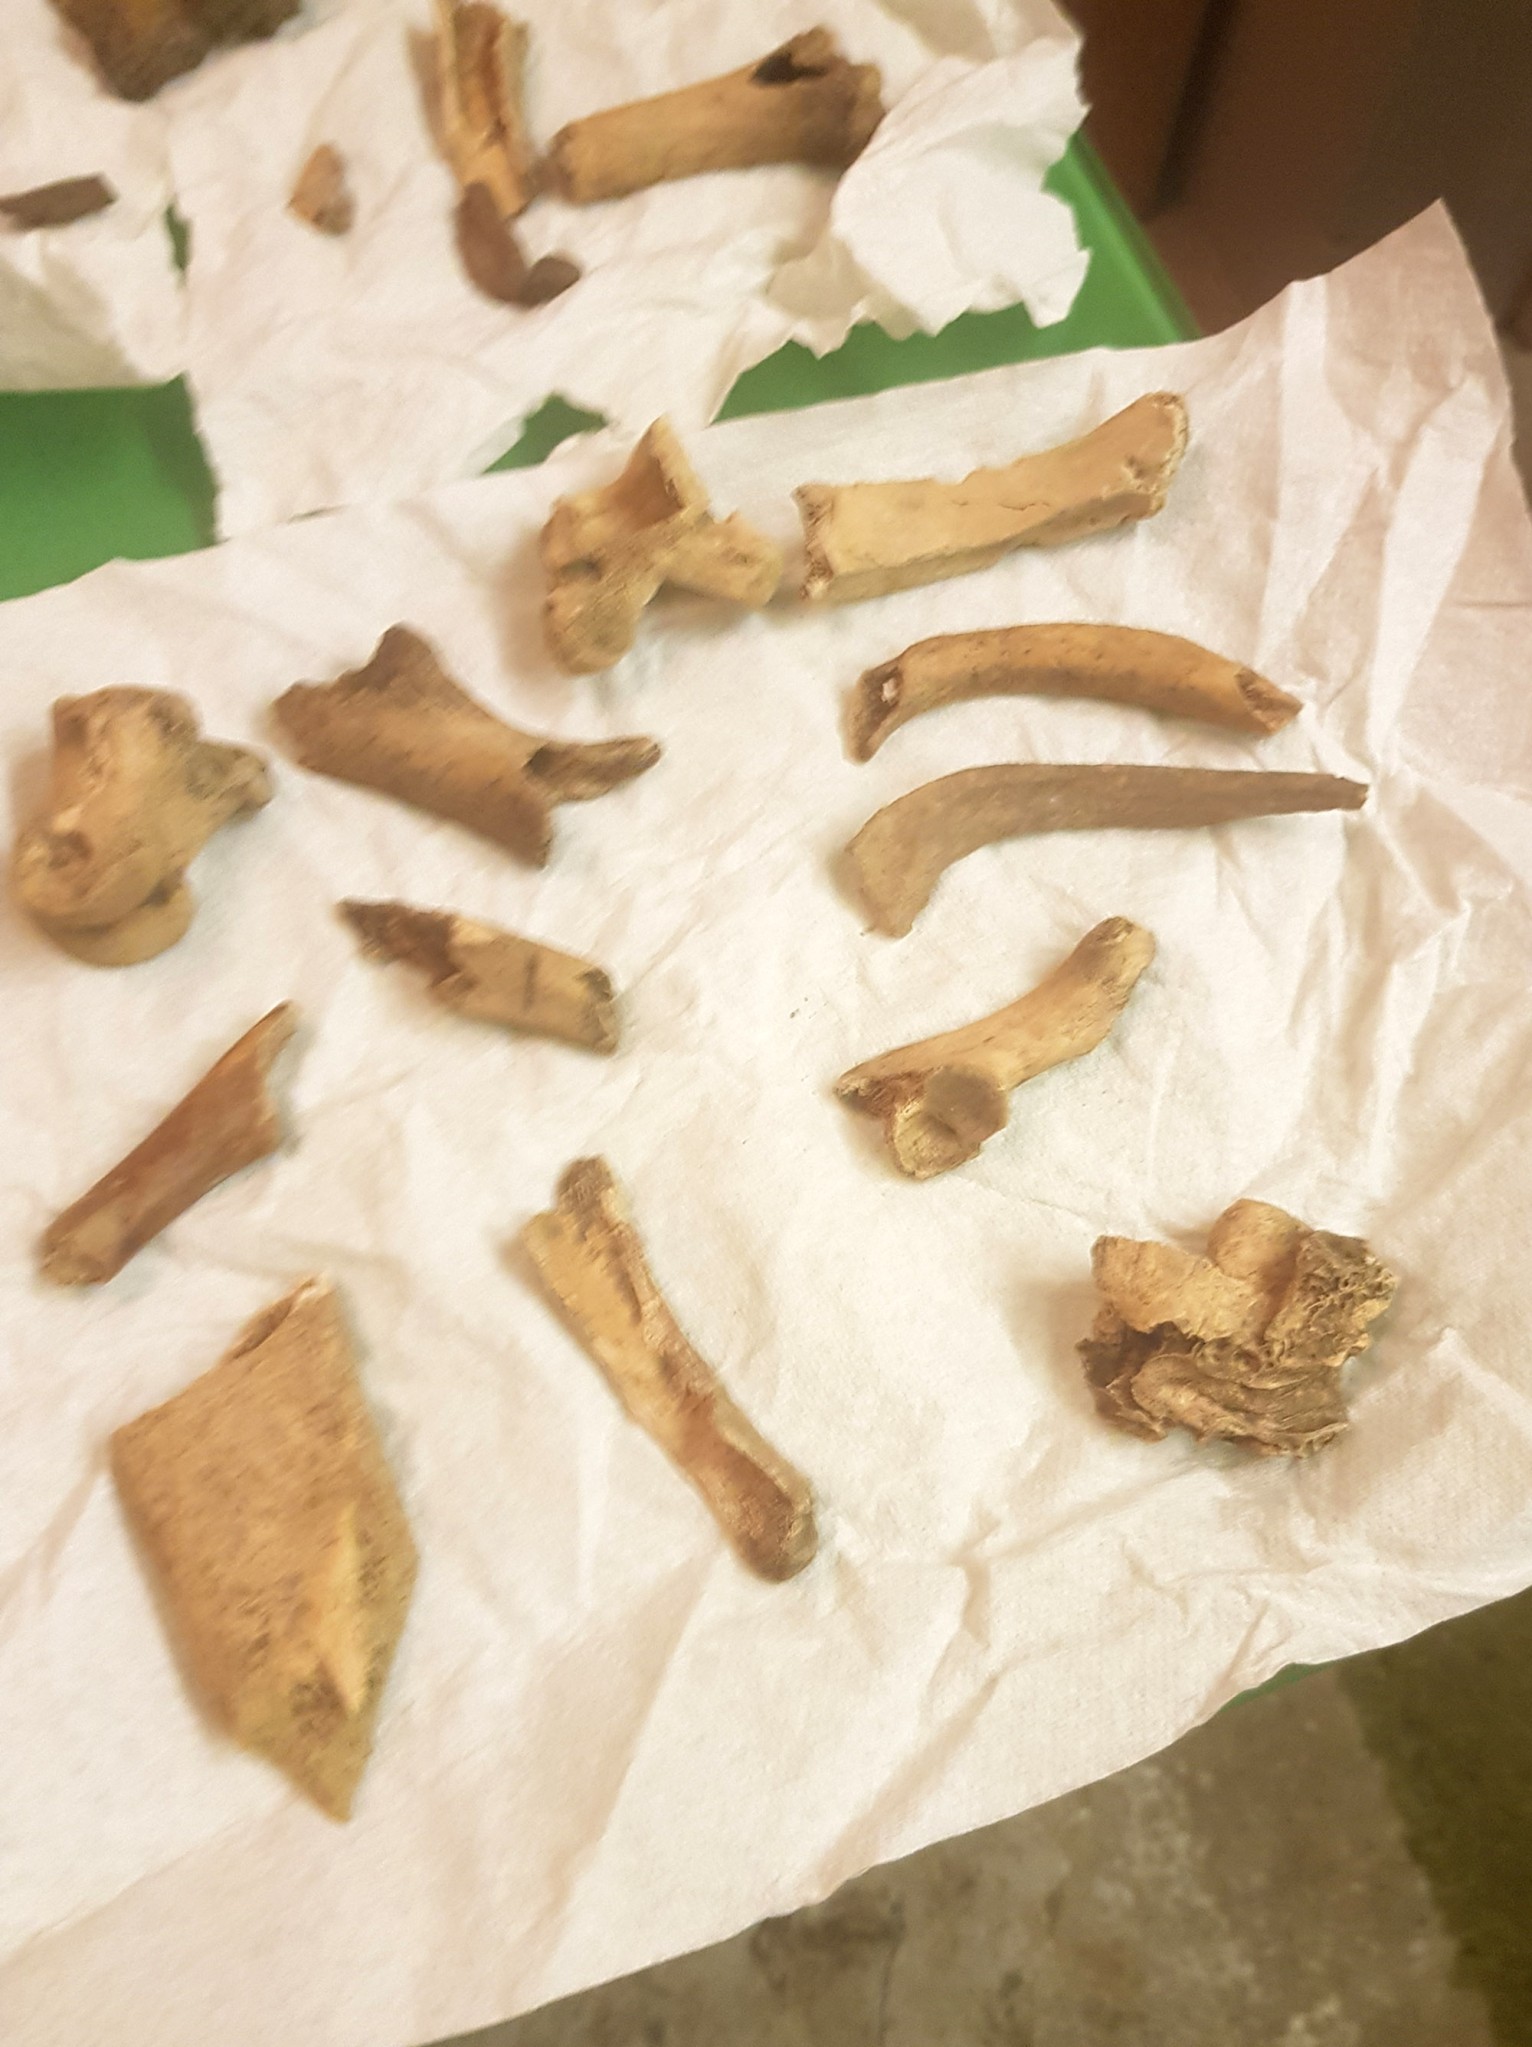 Um especialista descobriu que os ossos não eram ossos de animais, mas sim restos humanos (Foto: Caroline Humphries / Jam Press / Divulgação)